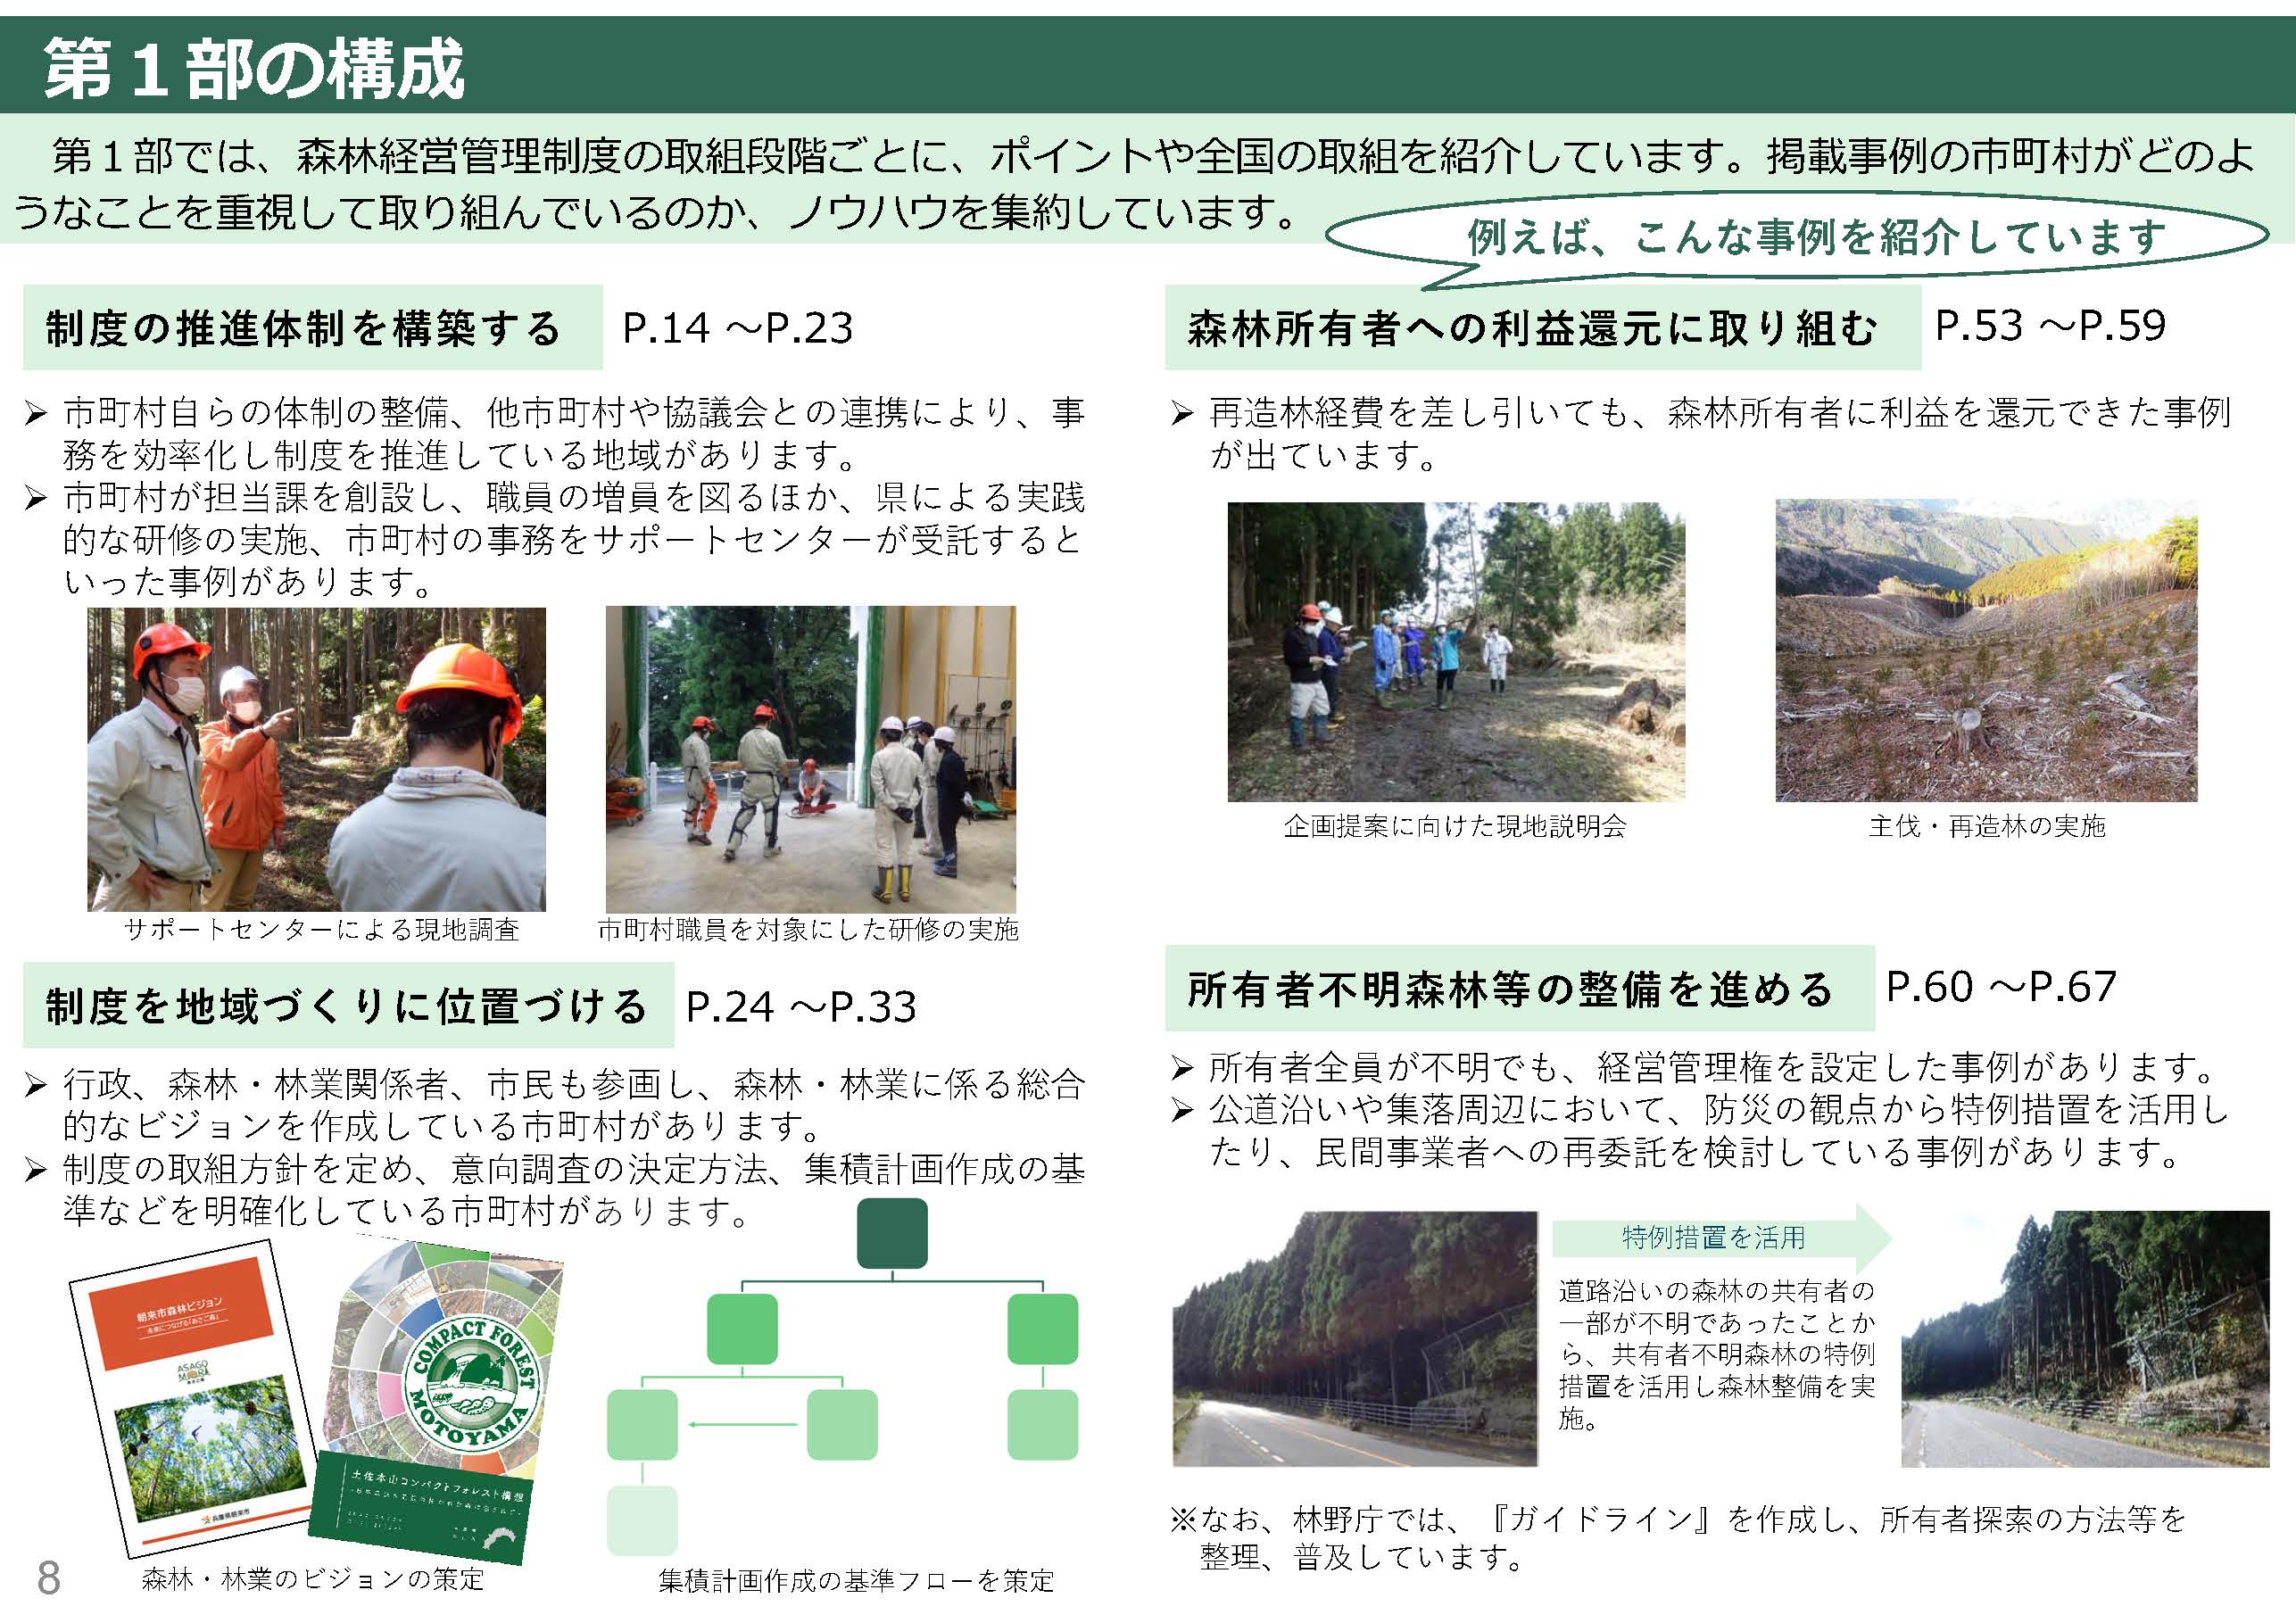 「森林経営管理制度に係る取組事例集Vol.4」を公表しました